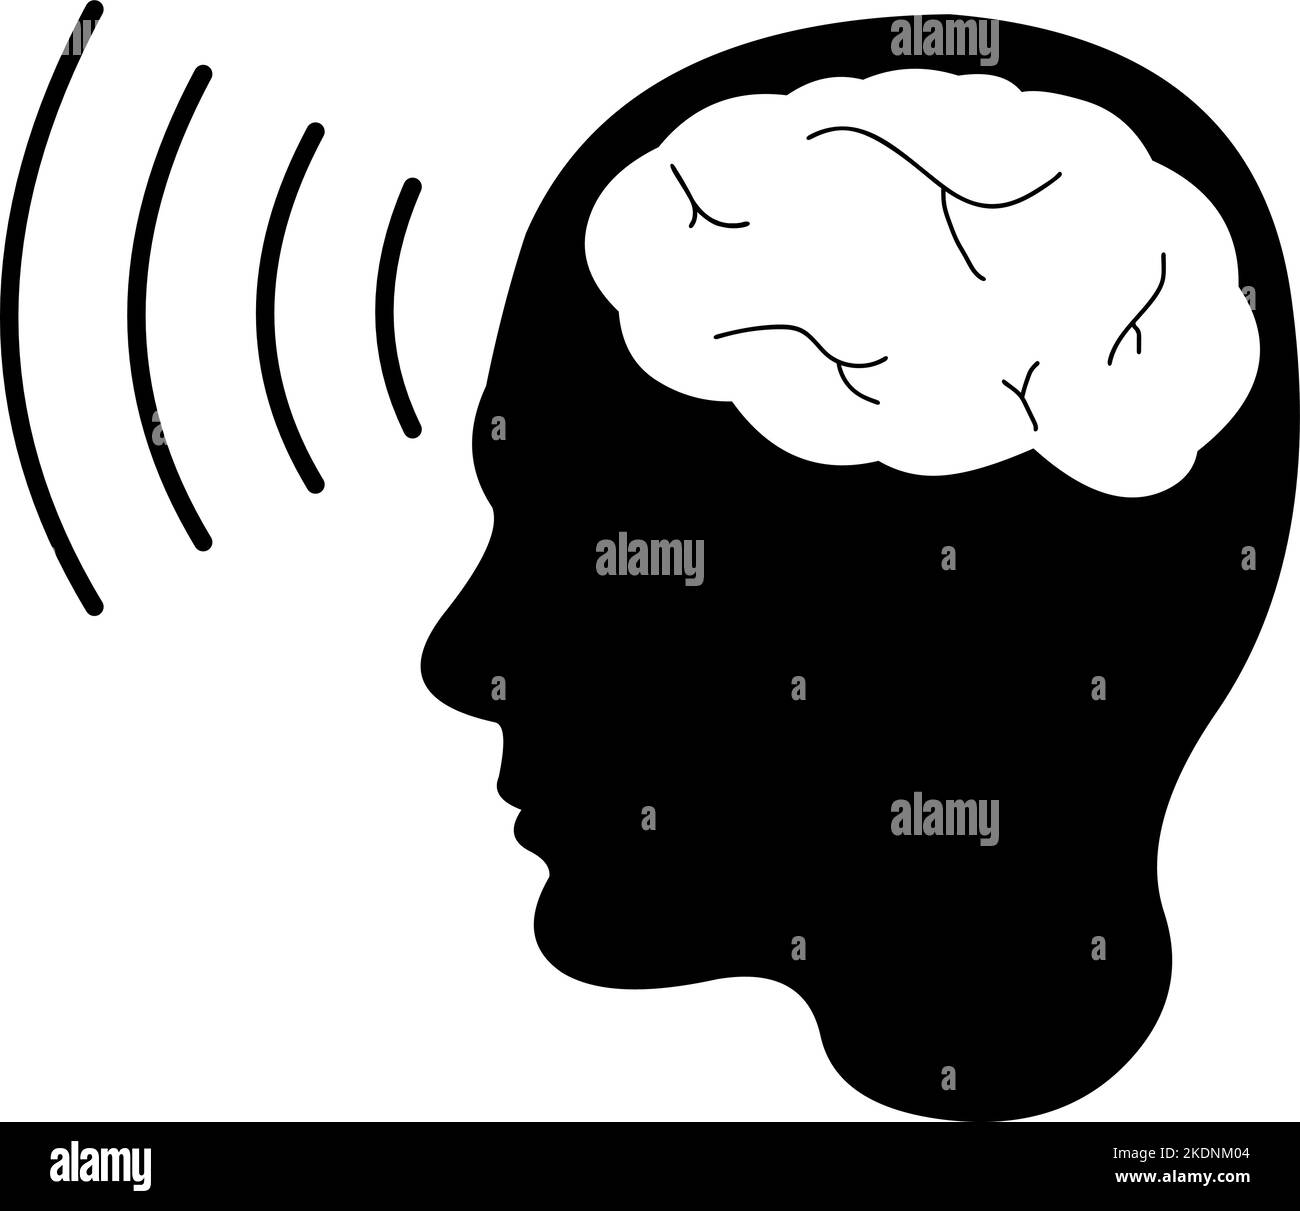 Vektor-Symbol Illustration der schwarzen Silhouette einer Person mit Gehirnwellen, im Konzept der Telepathie Stock Vektor